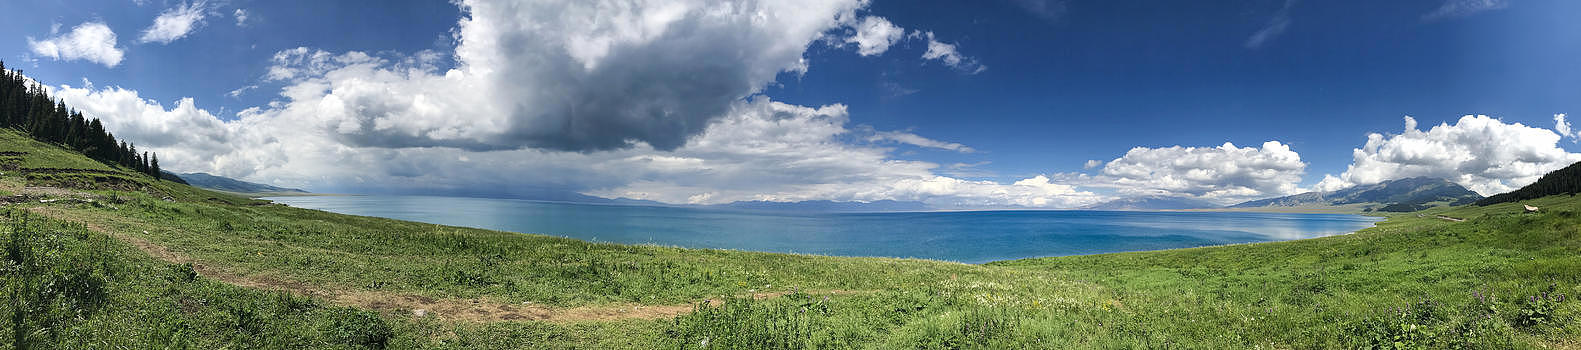 新疆赛里木湖全景图图片素材免费下载